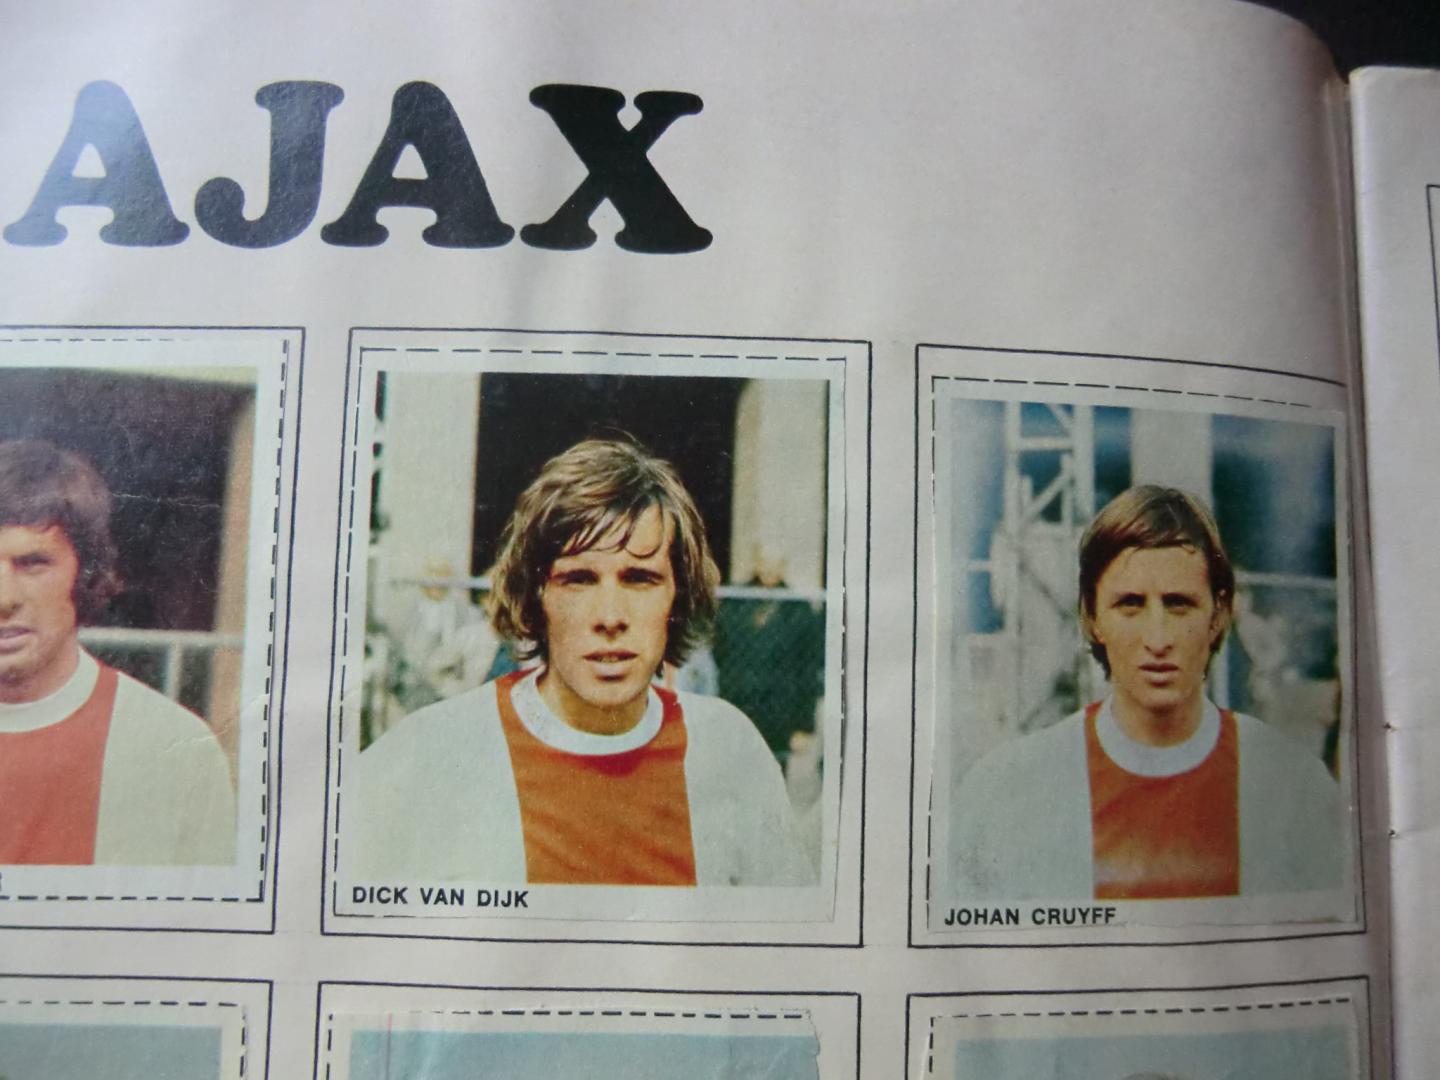  - Album Foto Galerij 1-0 (meer dan 500 bekende Nederlandse en Europese spelersplaatjes) incl. Johan Cruyff